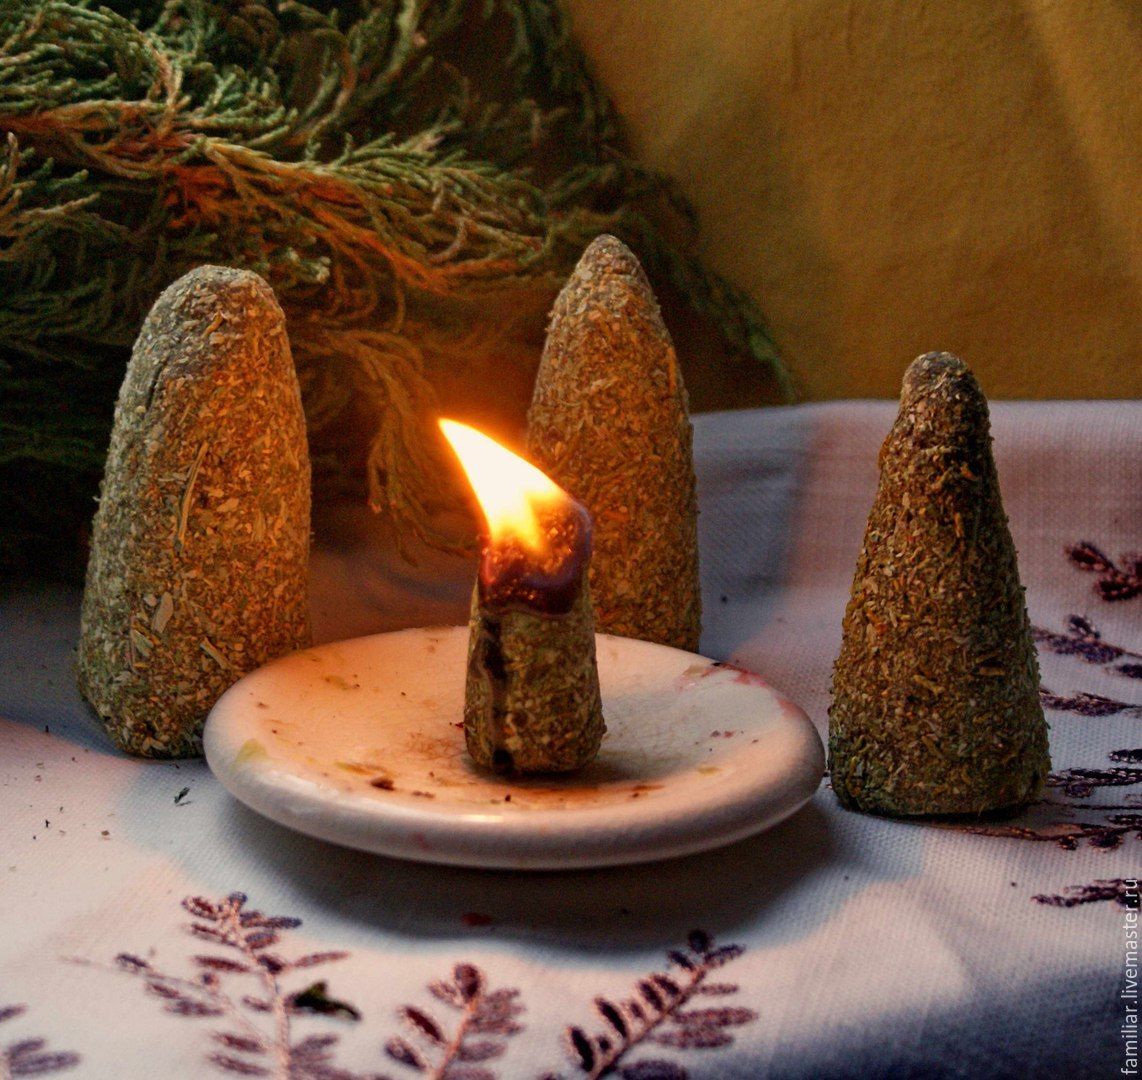 Свечи в домашних условиях: Как сделать ароматические свечи дома - инструкция для начинающих